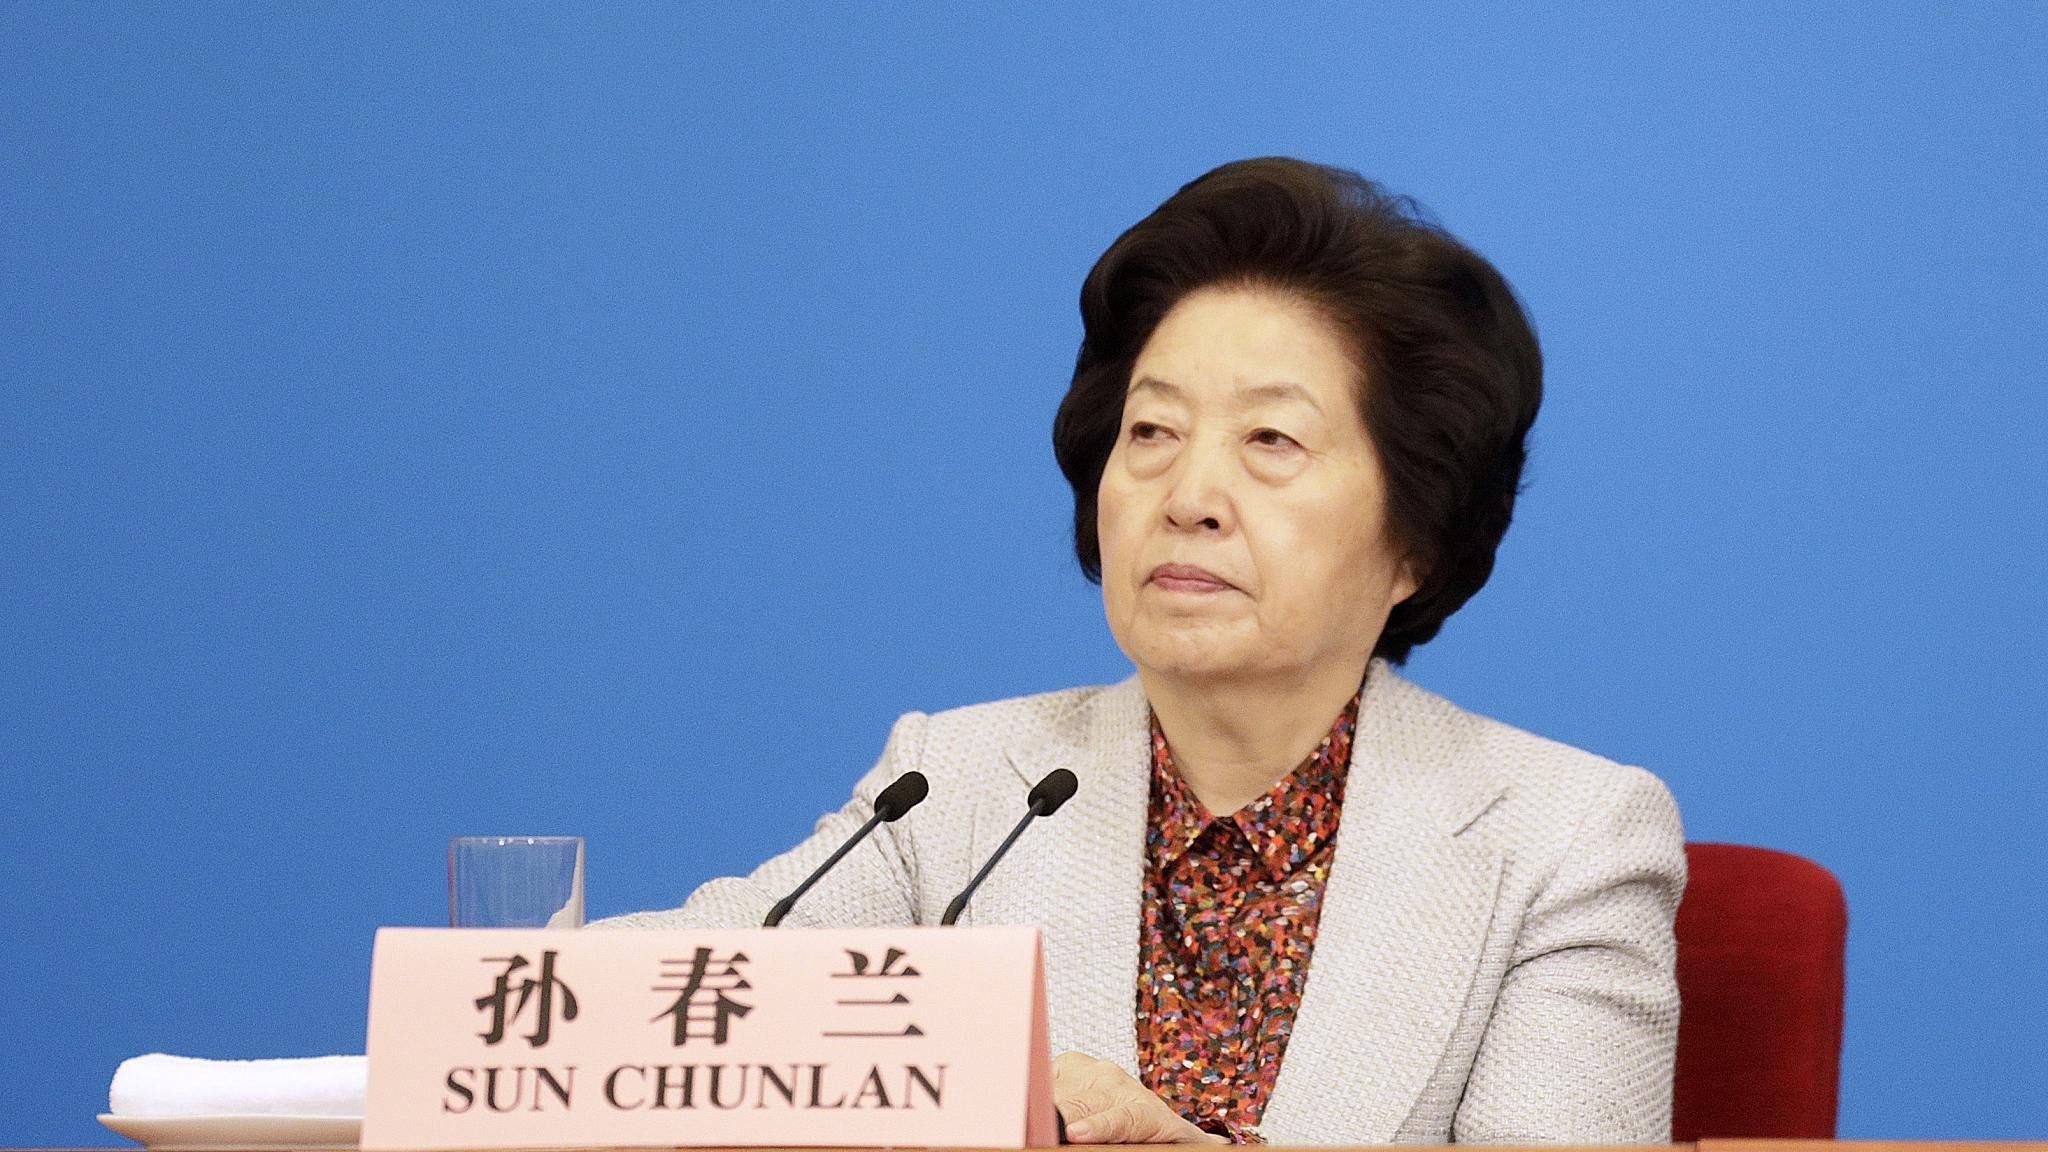 “Karantin tədbirlərini optimallaşdırmaq lazımdır” – Çin rəsmisi